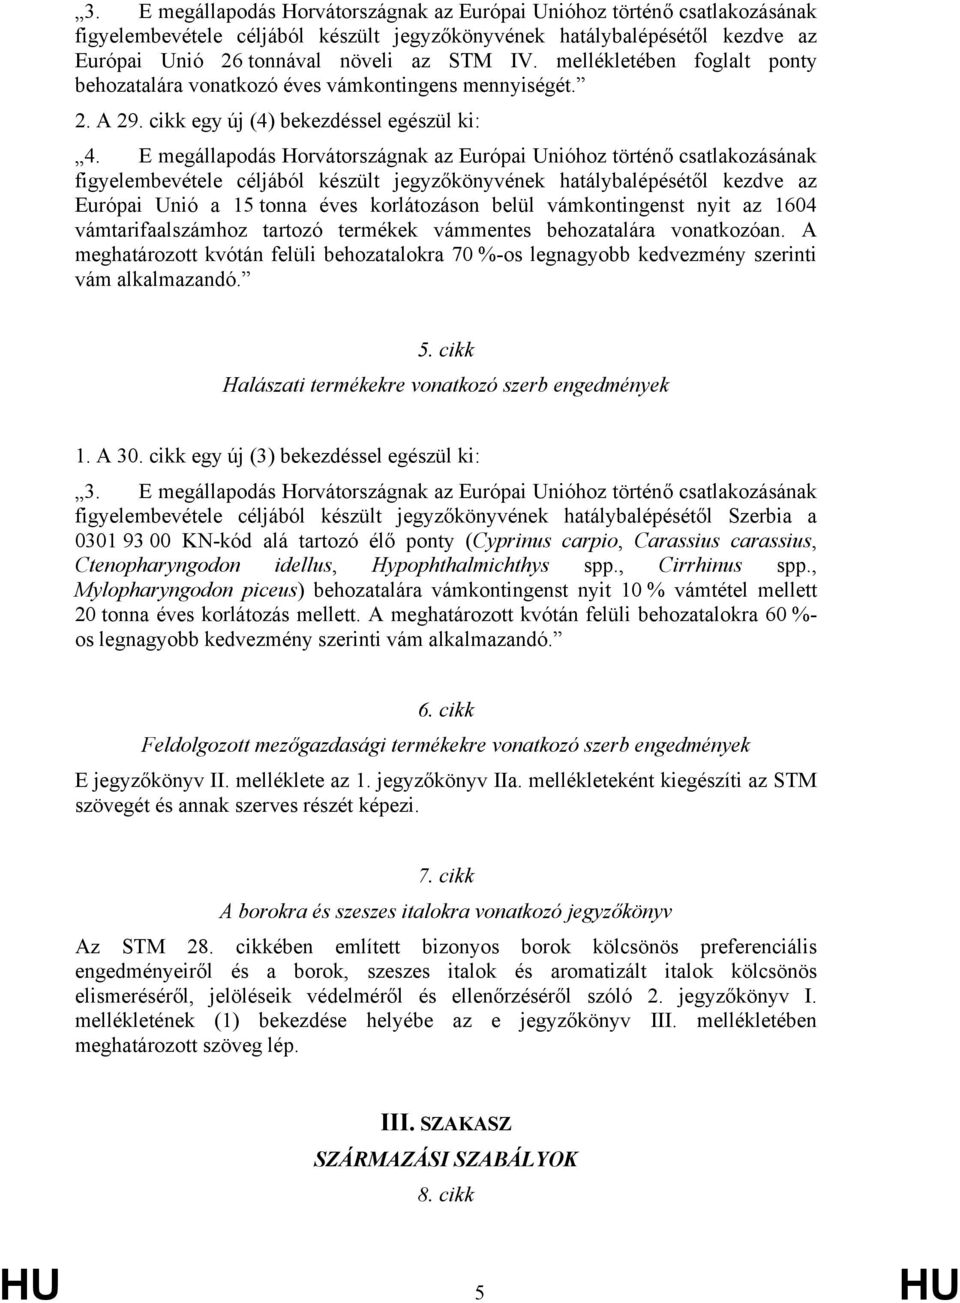 E megállapodás Horvátországnak az Európai Unióhoz történő csatlakozásának figyelembevétele céljából készült jegyzőkönyvének hatálybalépésétől kezdve az Európai Unió a 15 tonna éves korlátozáson belül